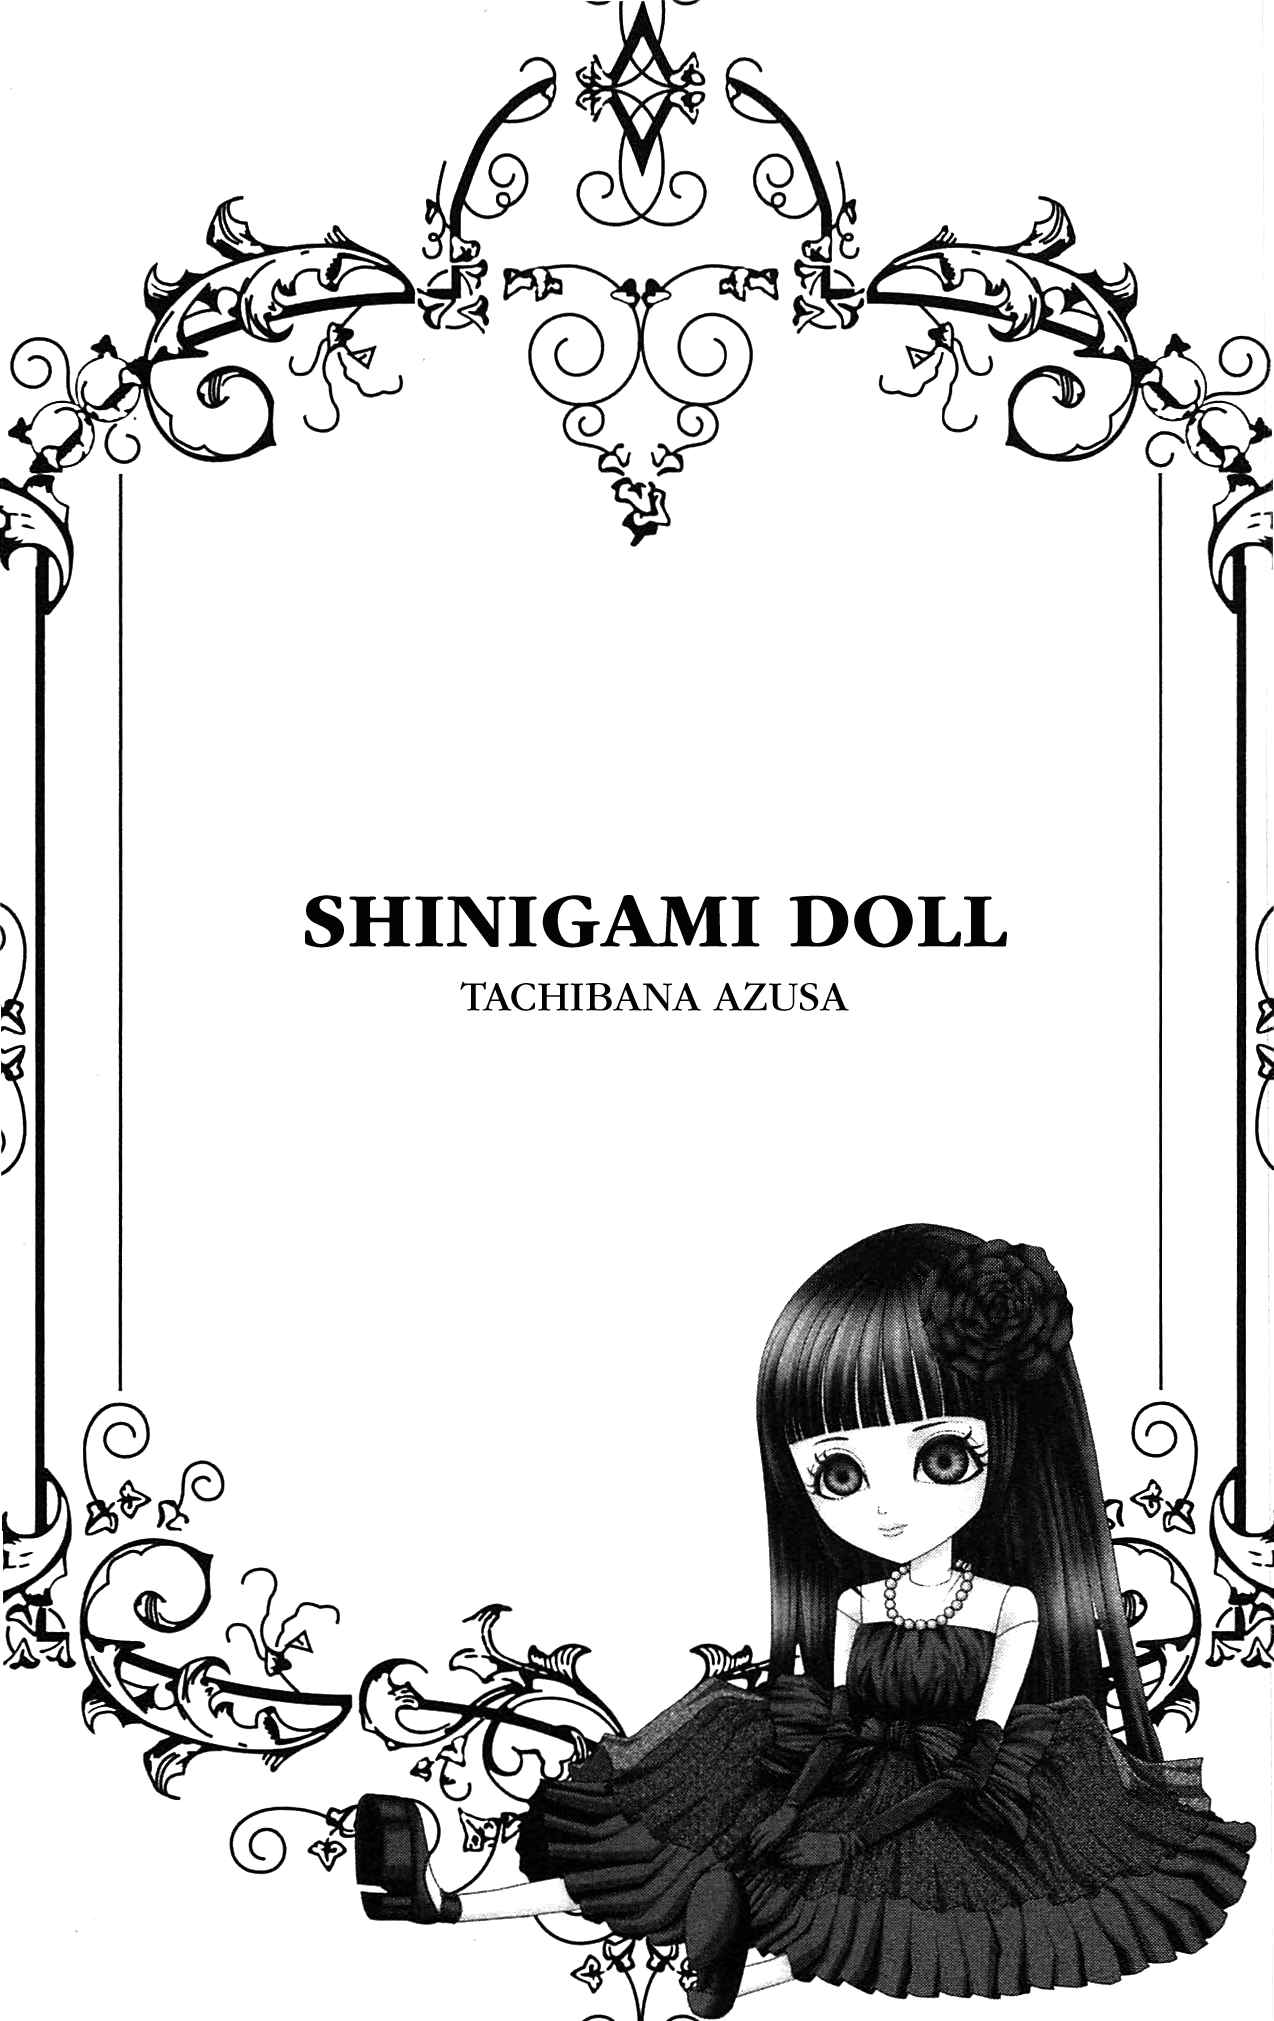 Shinigami Doll Vol. 1 Ch. 1 Case 1